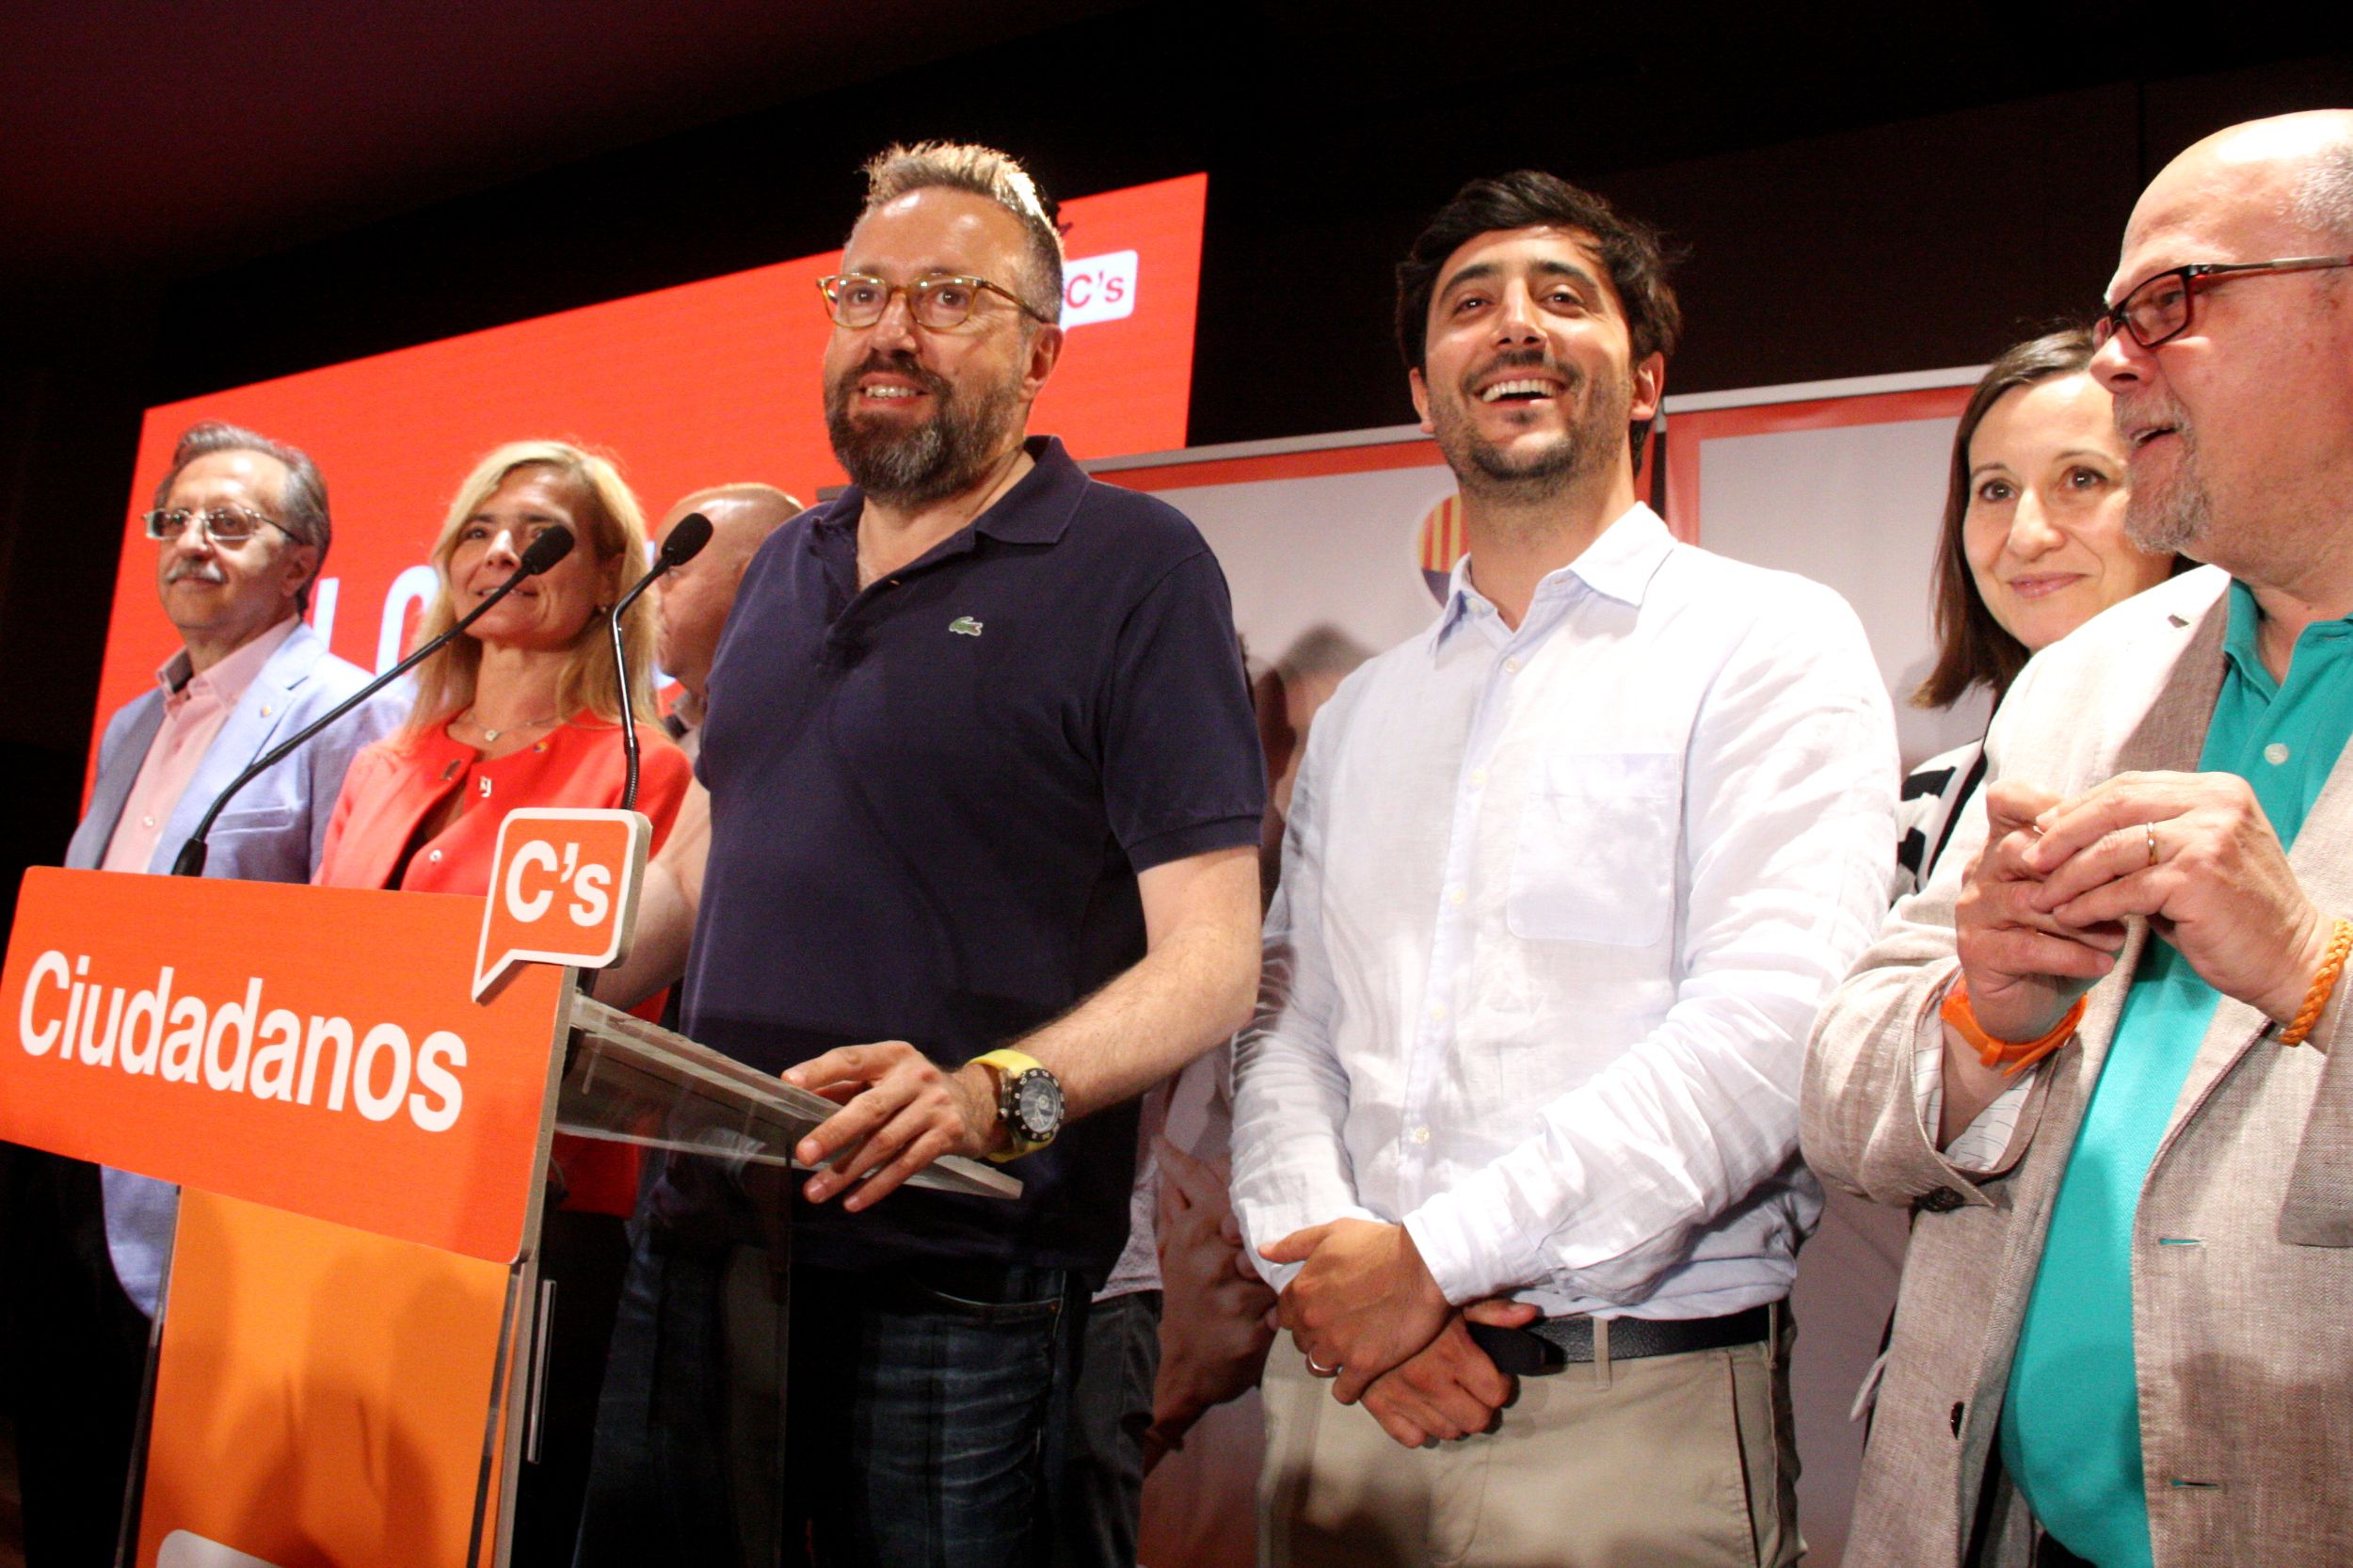 C's dilueix el veto a Rajoy i no descarta entrar al govern